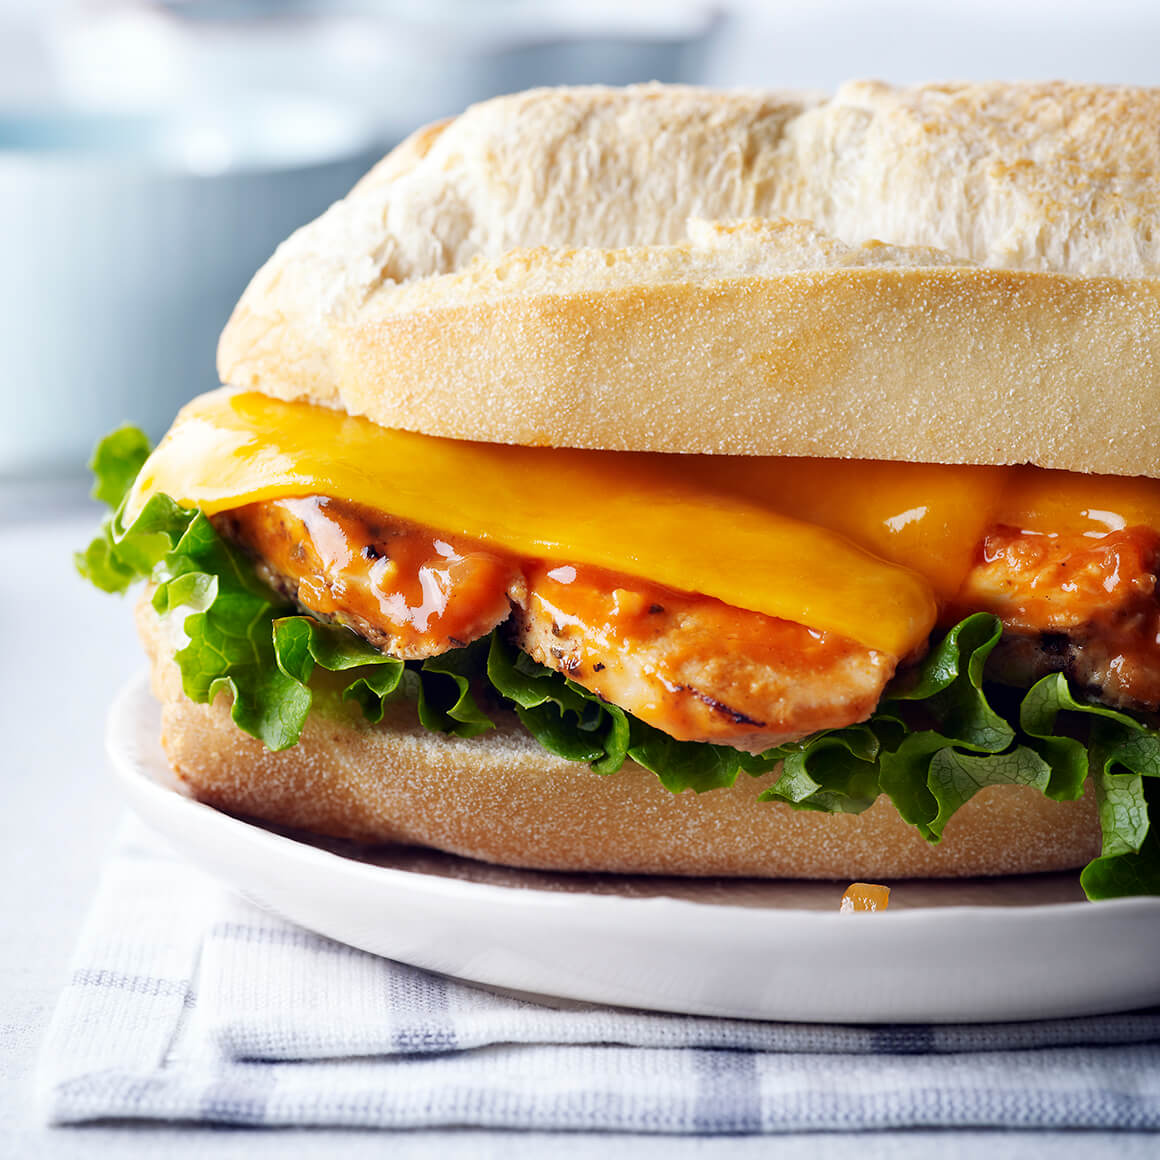 The “So Canadian” Chicken Sandwich | Chicken.ca